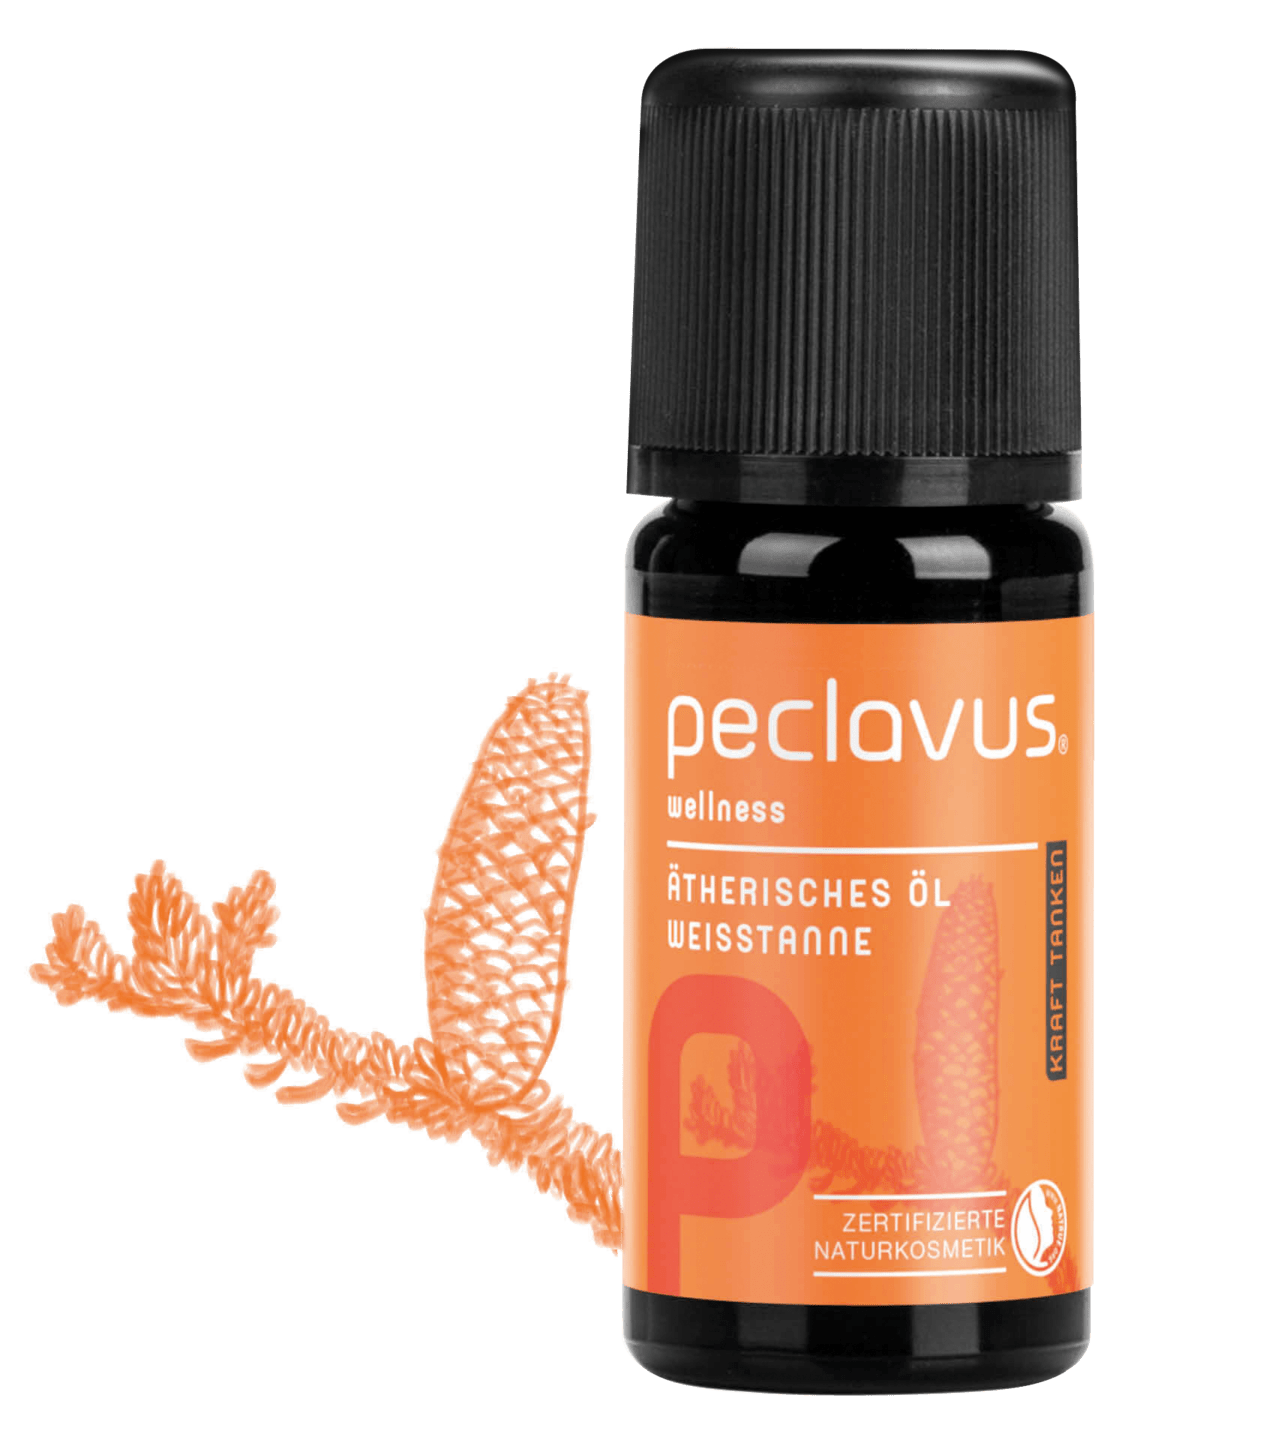 peclavus - Ätherisches Öl Weisstanne, 10 ml